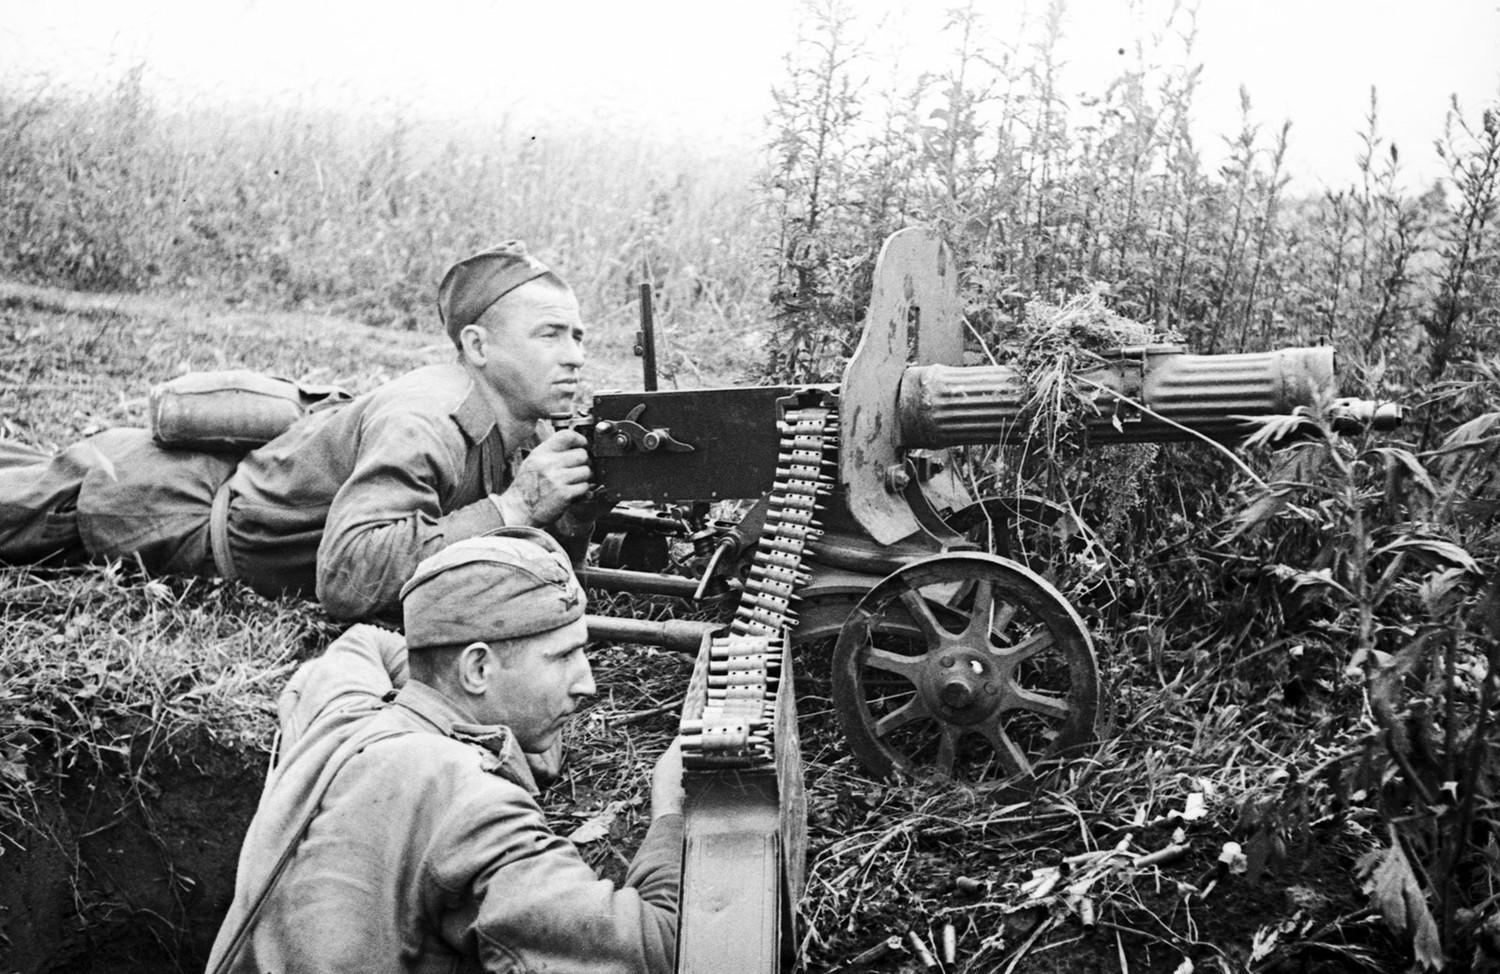 Пулеметчики Максим второй мировой войны 1941